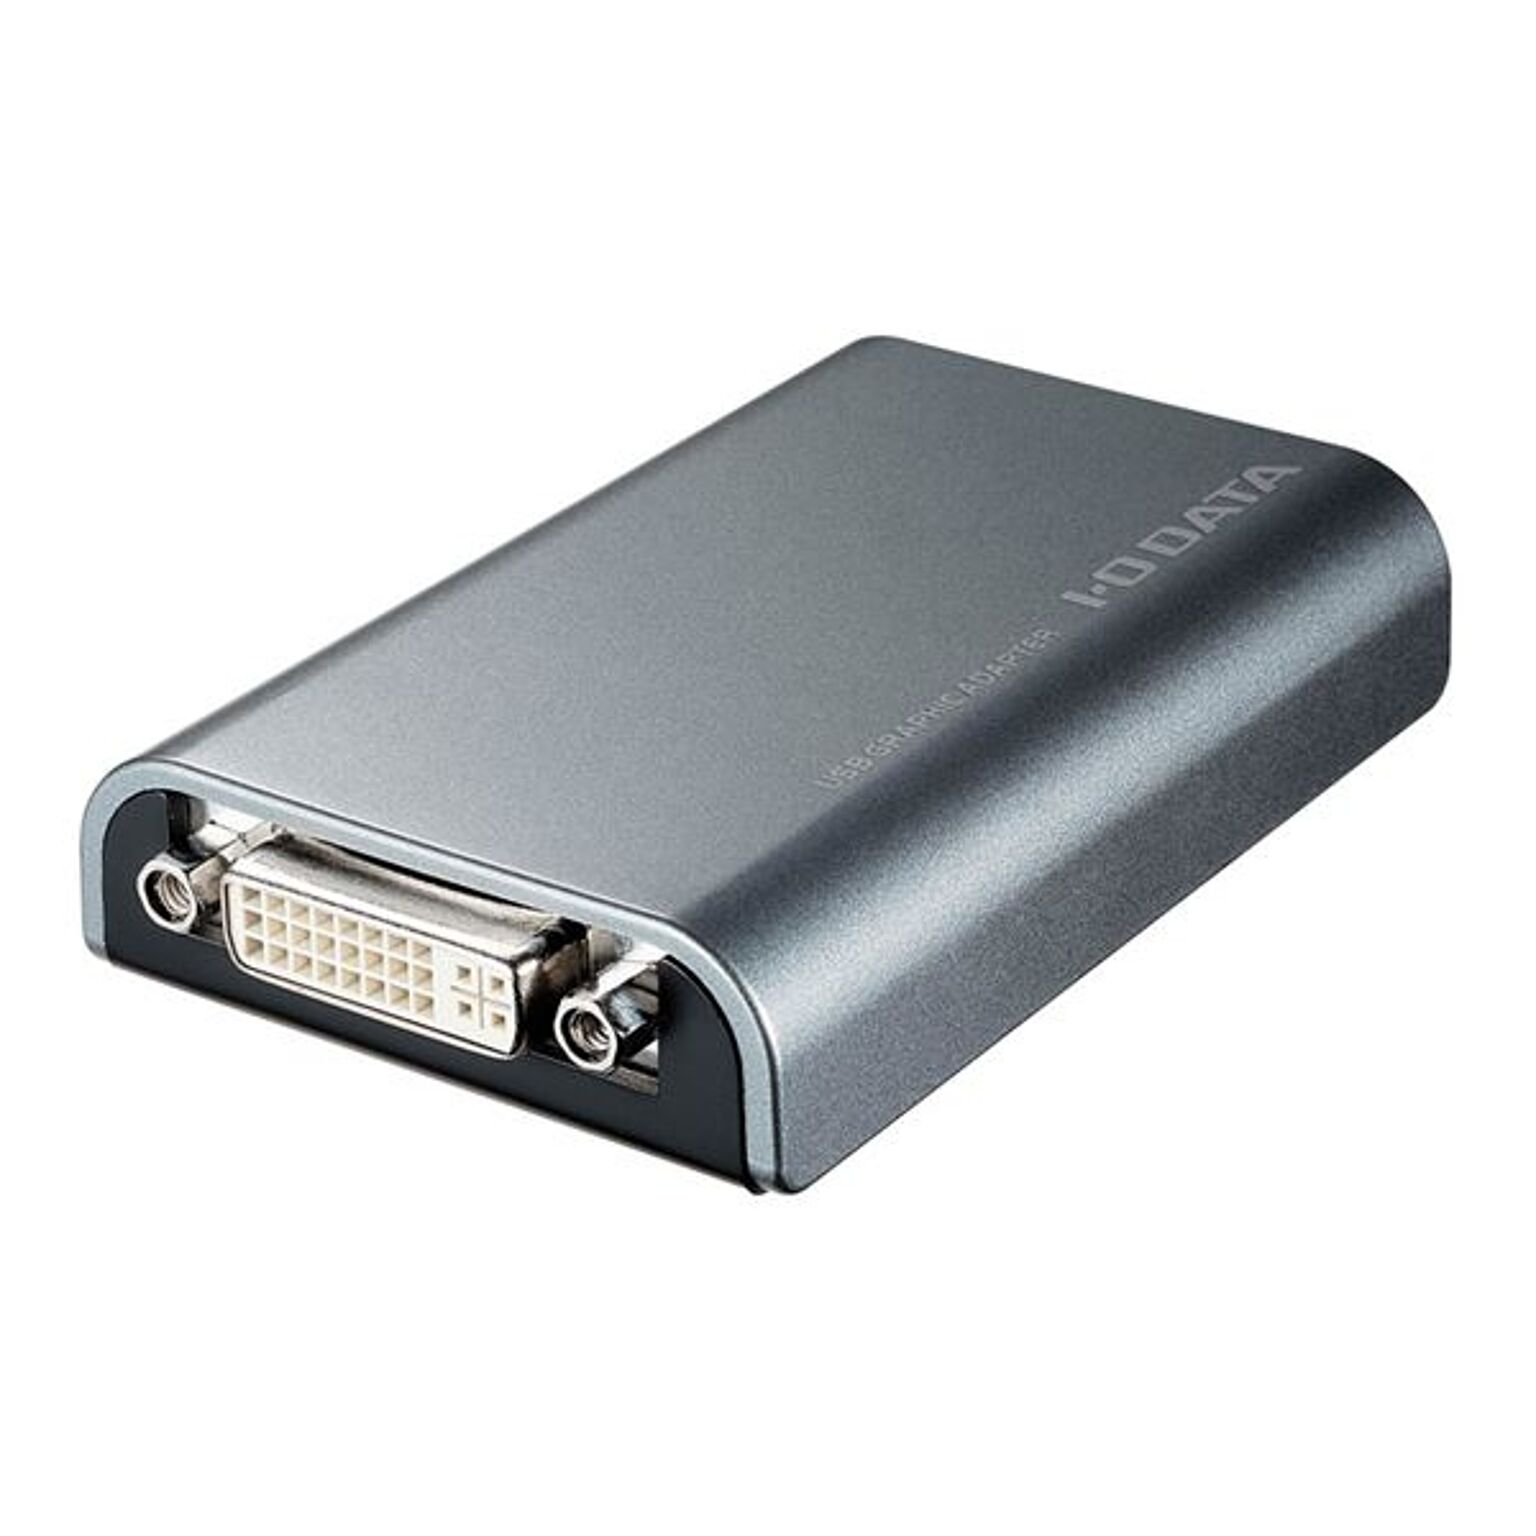 アイ・オー・データ機器 USB接続 外付けグラフィックアダプター デジタル/アナログ両対応モデル USB-RGB/D2S